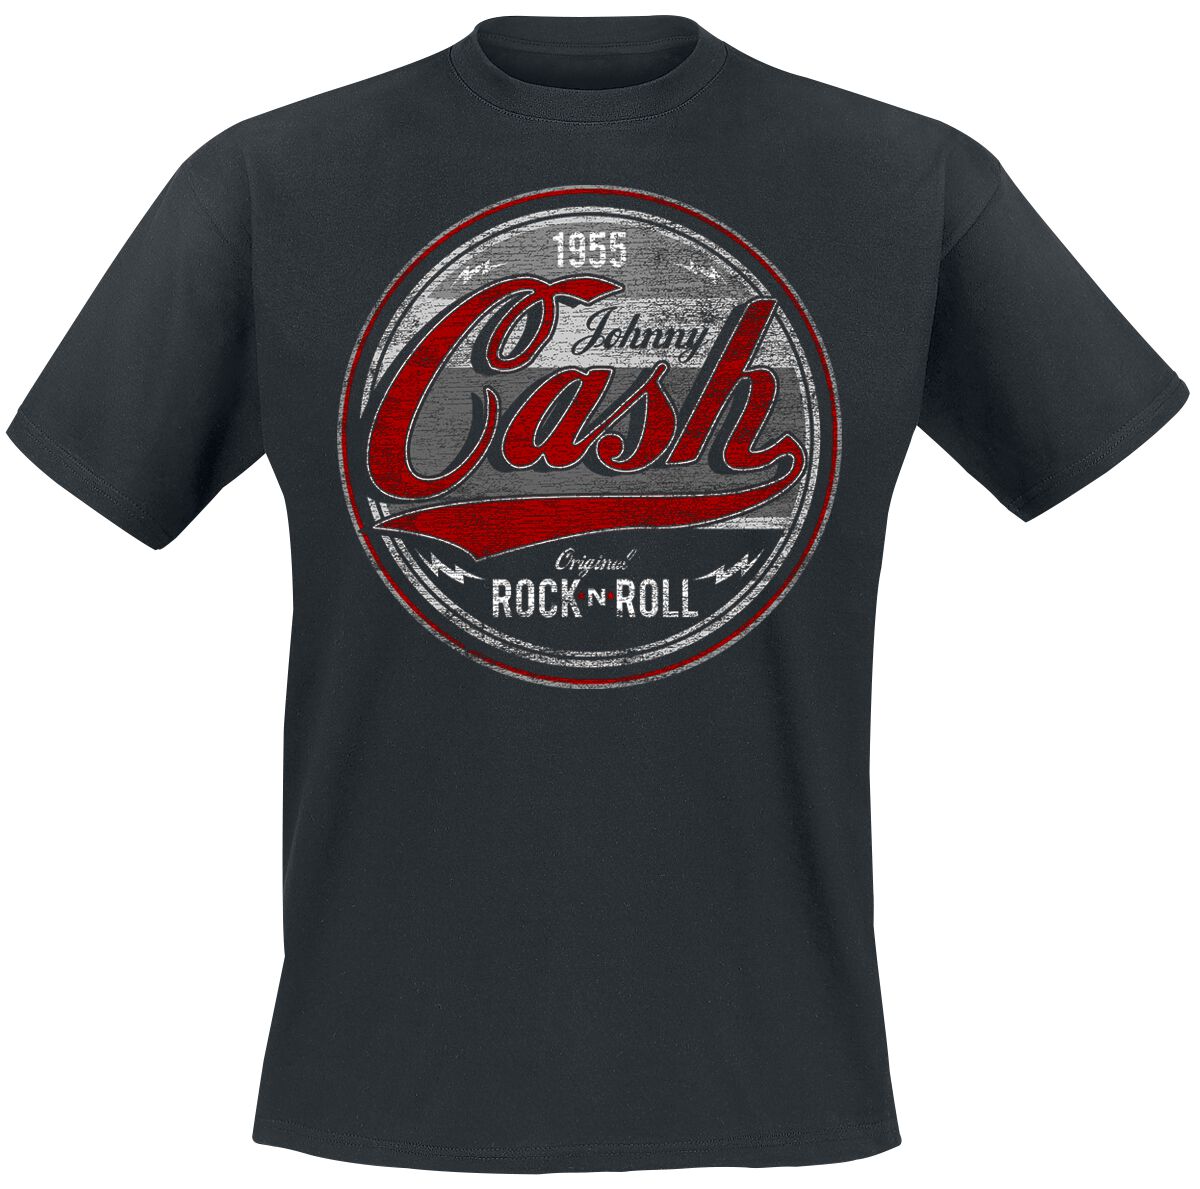 Johnny Cash T-Shirt - Original Rock n Roll Red/Grey - S bis 4XL - für Männer - Größe S - schwarz  - Lizenziertes Merchandise!